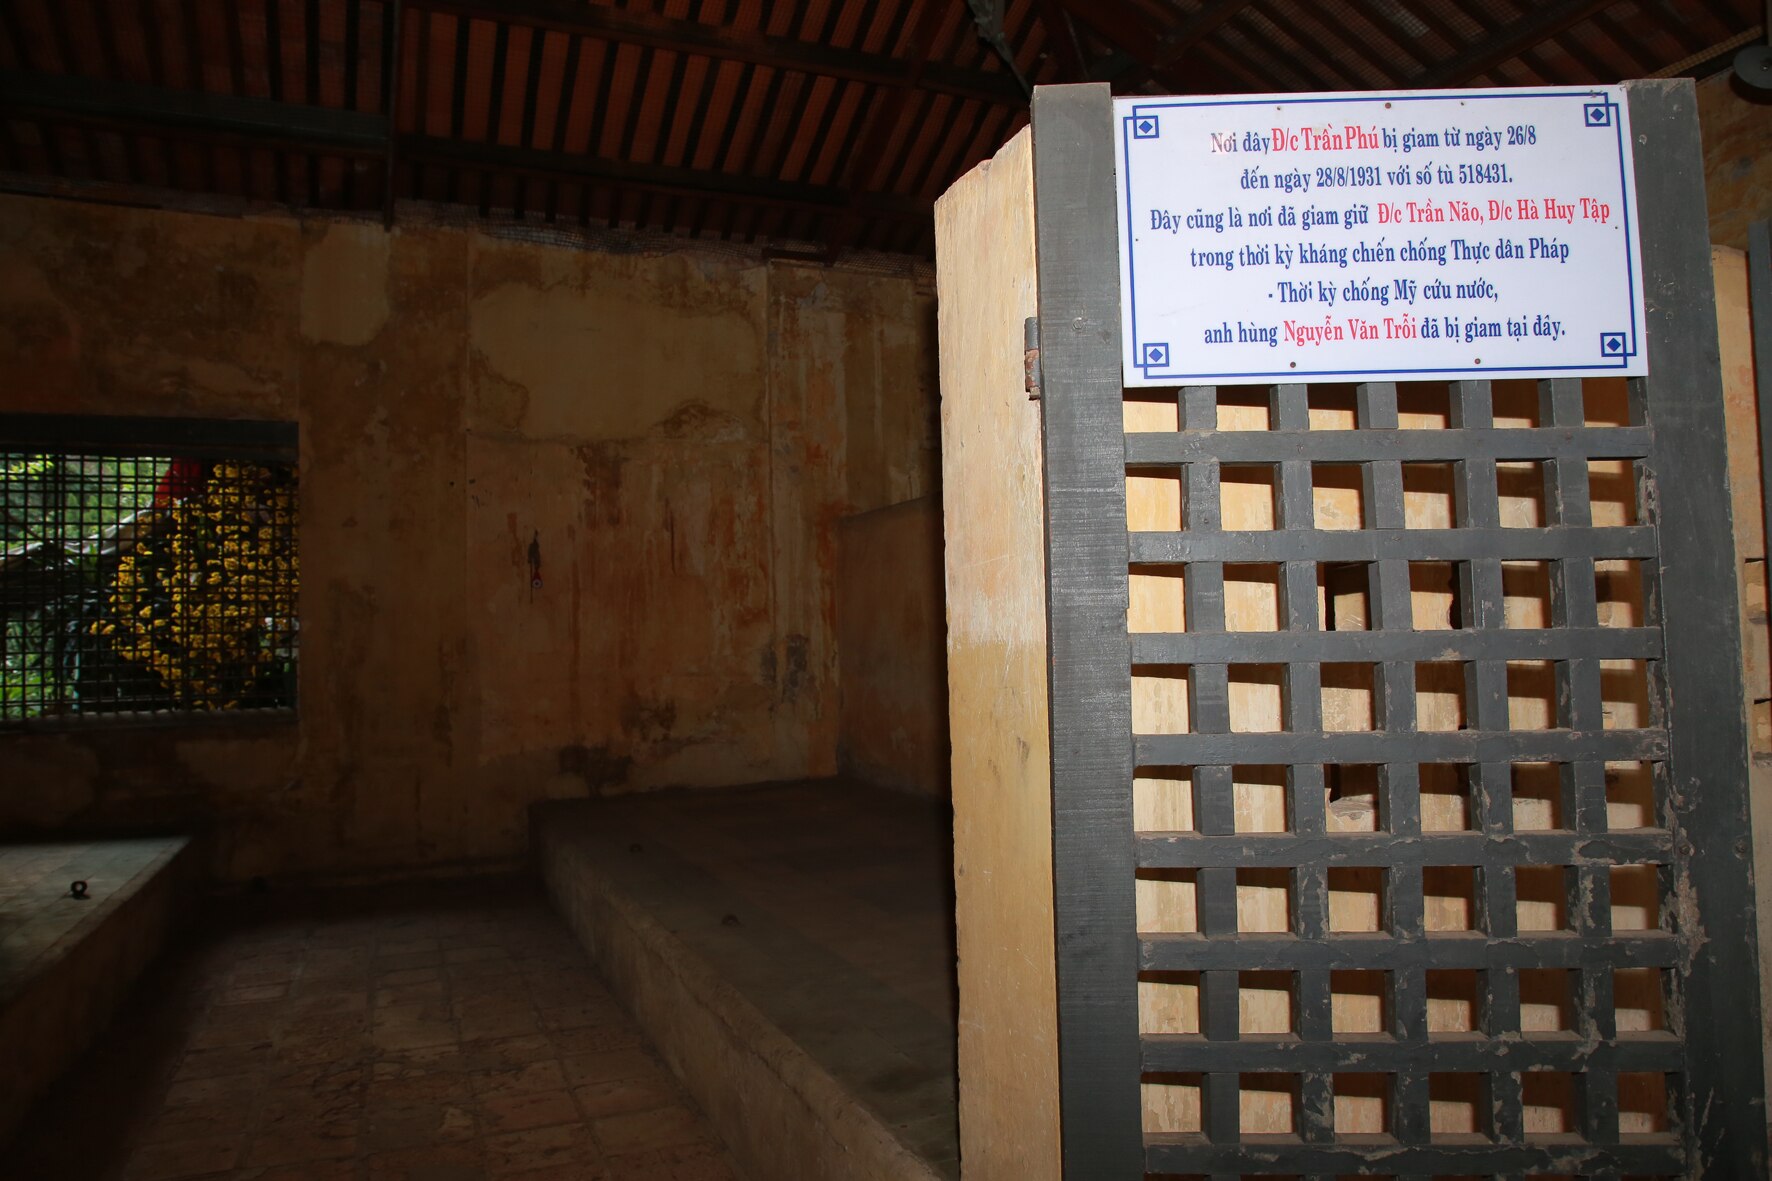 Khu trại giam Bệnh viện Chợ Quán, nơi Tổng Bí thư Trần Phú bị giam cầm gắn chặt với lịch sử Sài Gòn-Gia Định  - Ảnh 11.